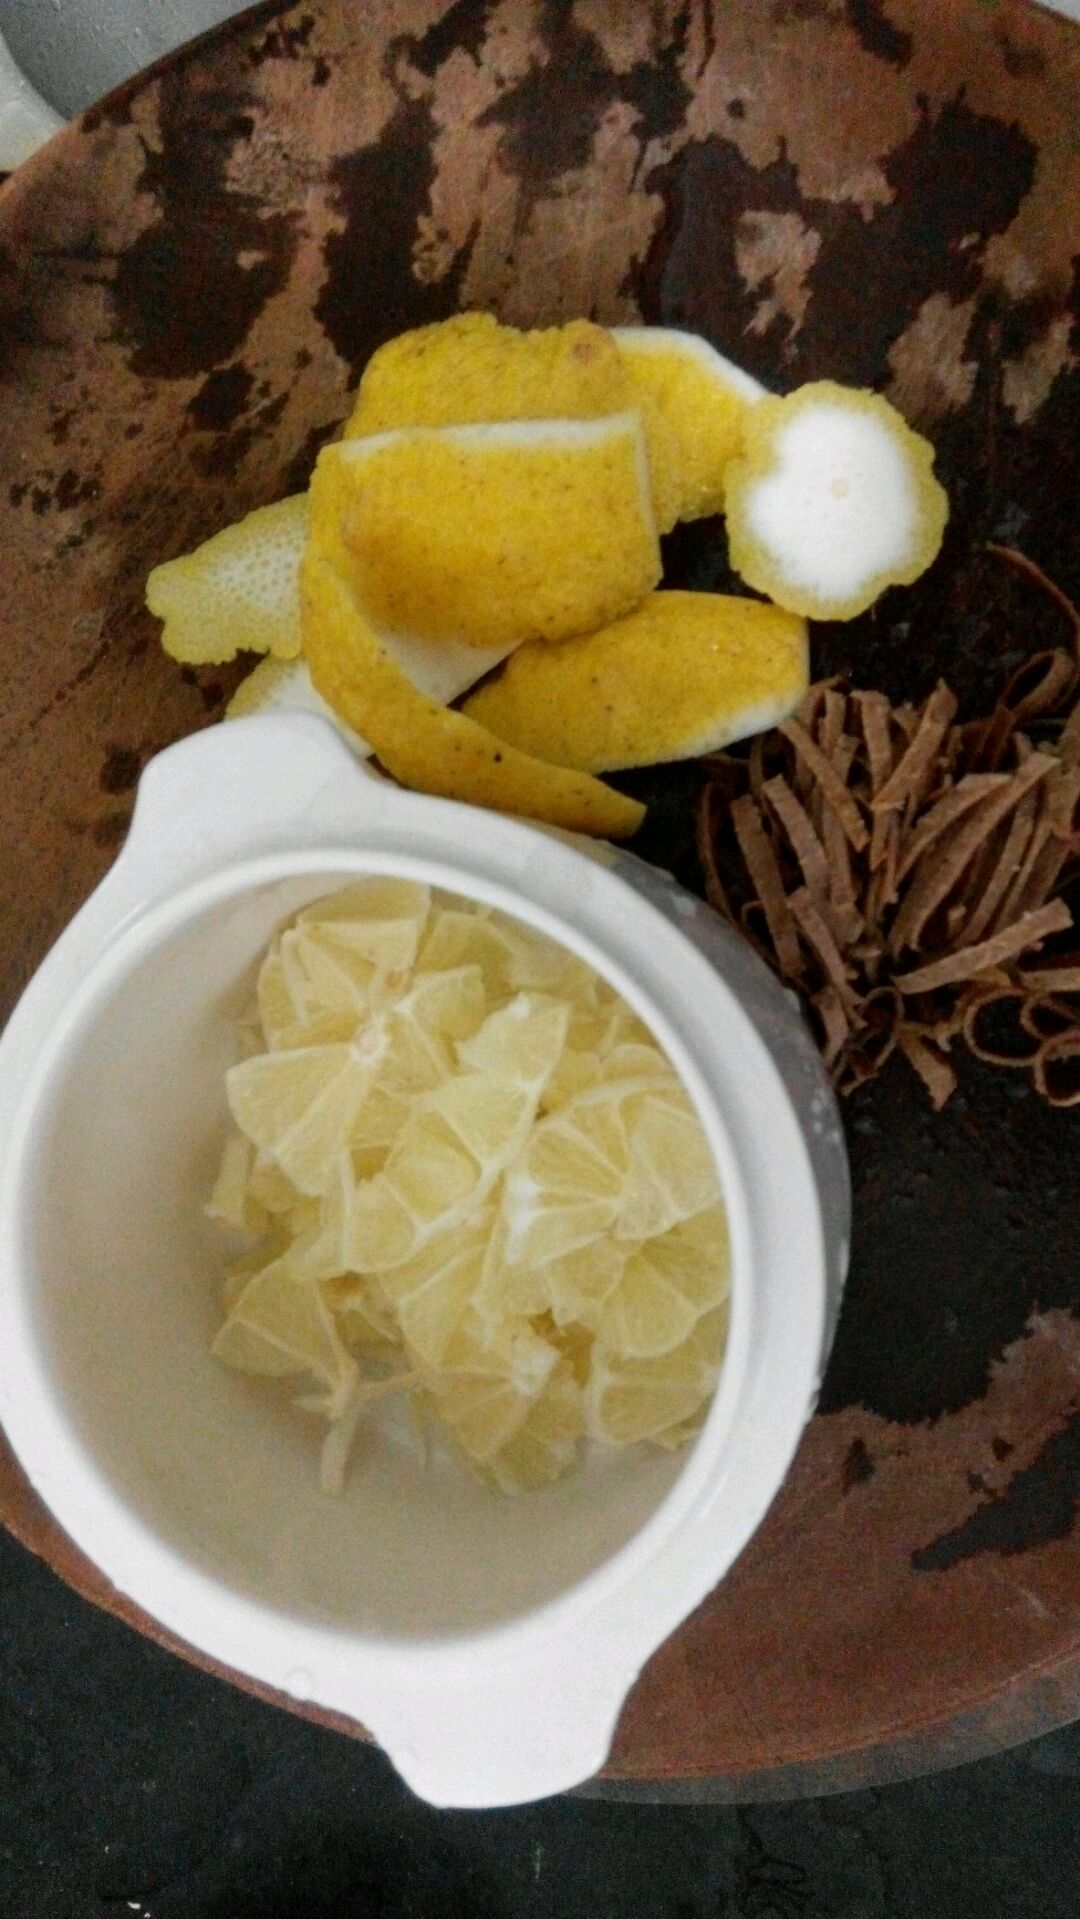 川贝冰糖炖柠檬怎么做_川贝冰糖炖柠檬的做法_豆果美食